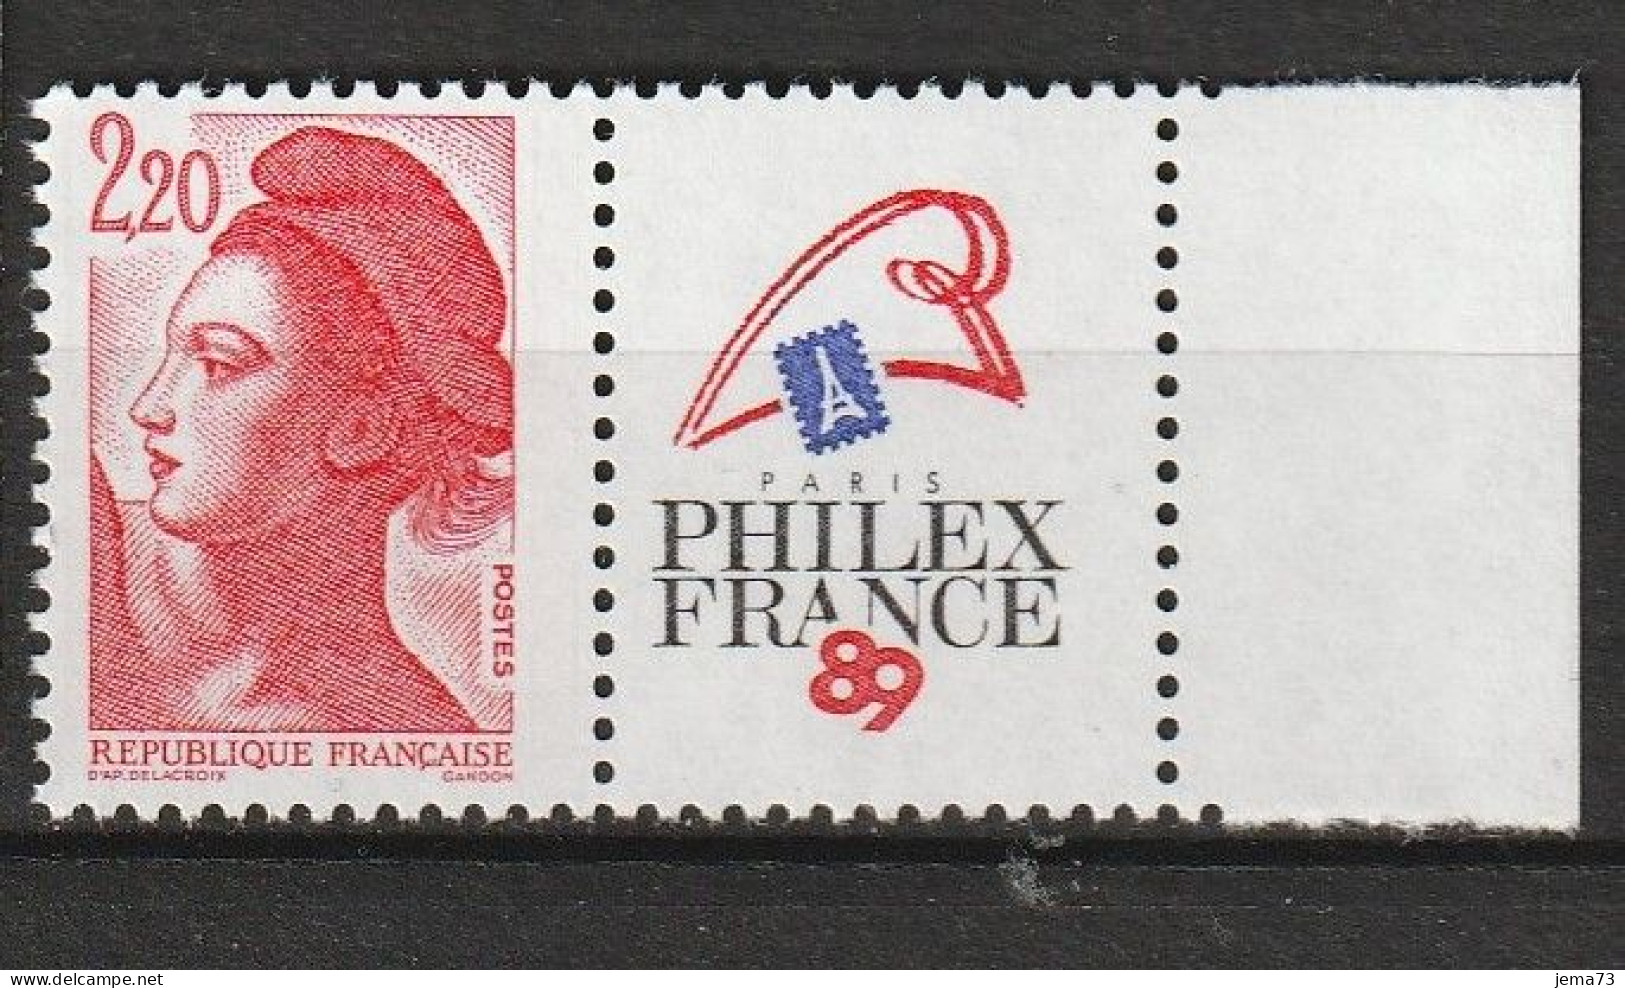 N° 2461 Philexfrance 89Exposition Philatélique Mondiale à Paris; Beau Timbre Neuf - Ongebruikt